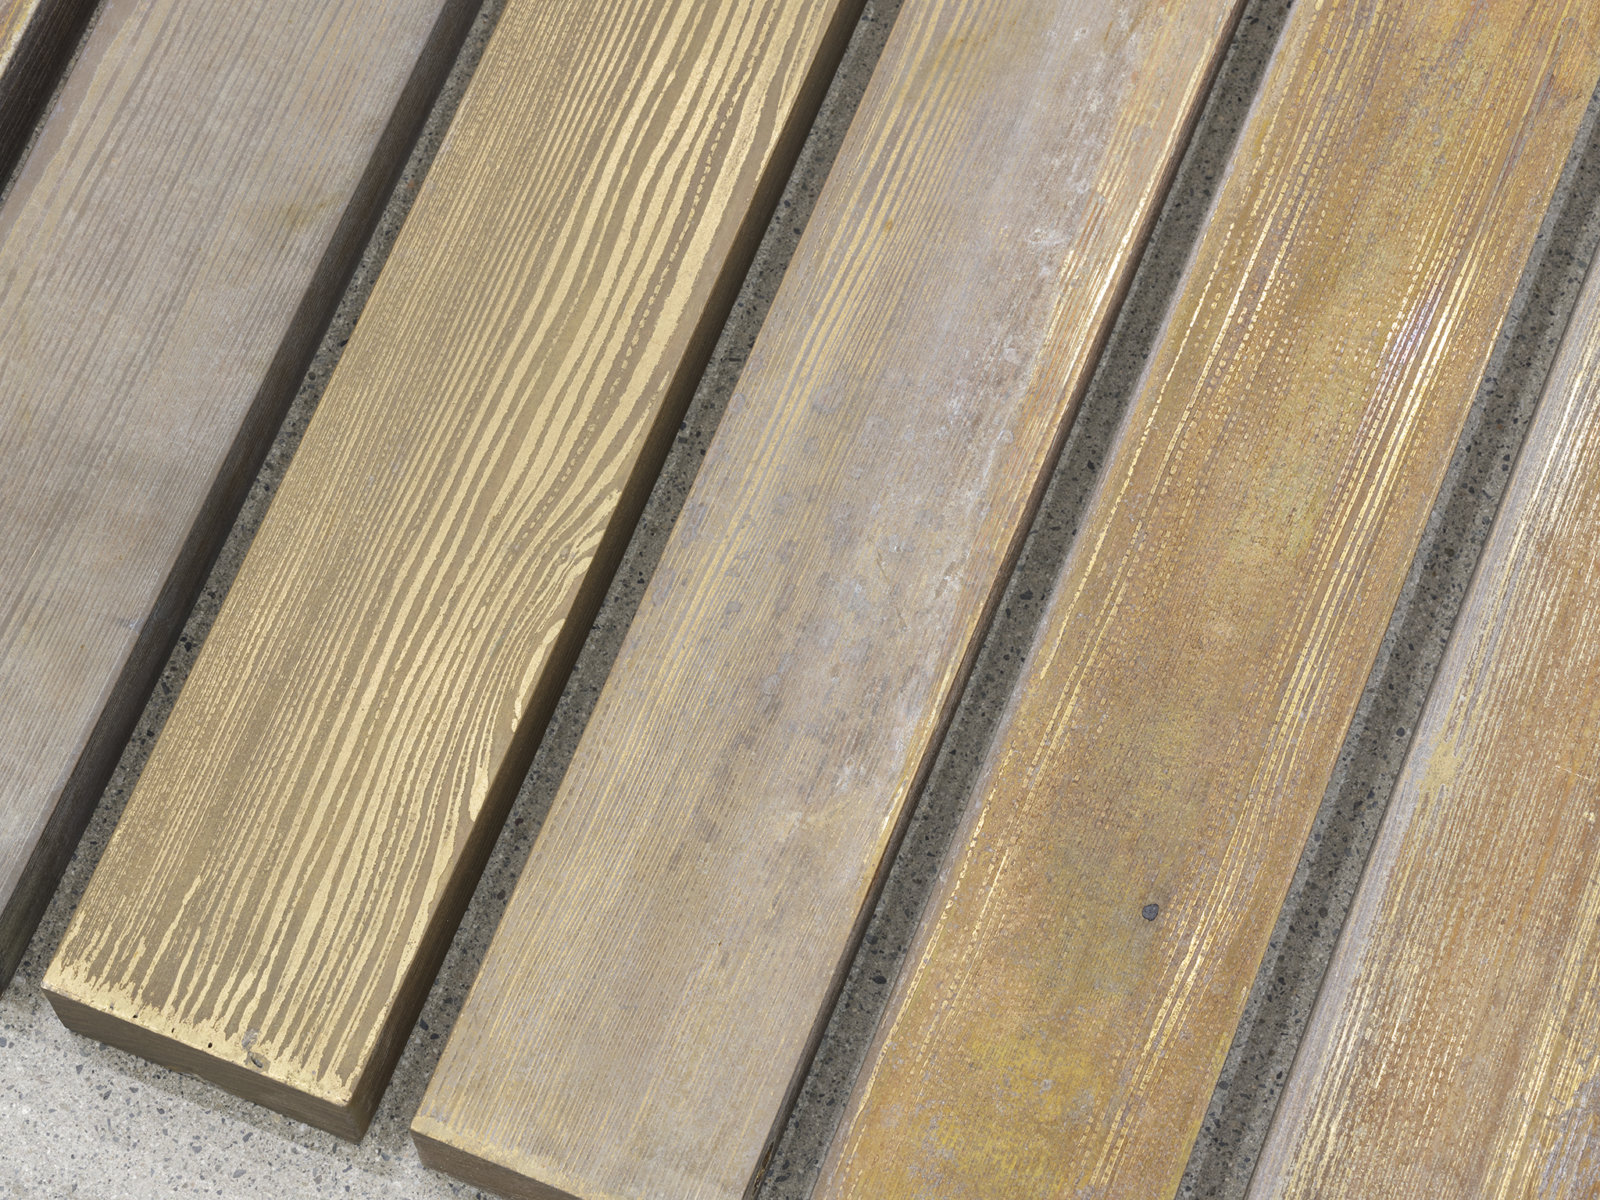 Geoffrey Farmer, 70 Planks (detail), 2021, acid-etched brass planks, 3 x 100 x 321 in. (6 x 253 x 815 cm)